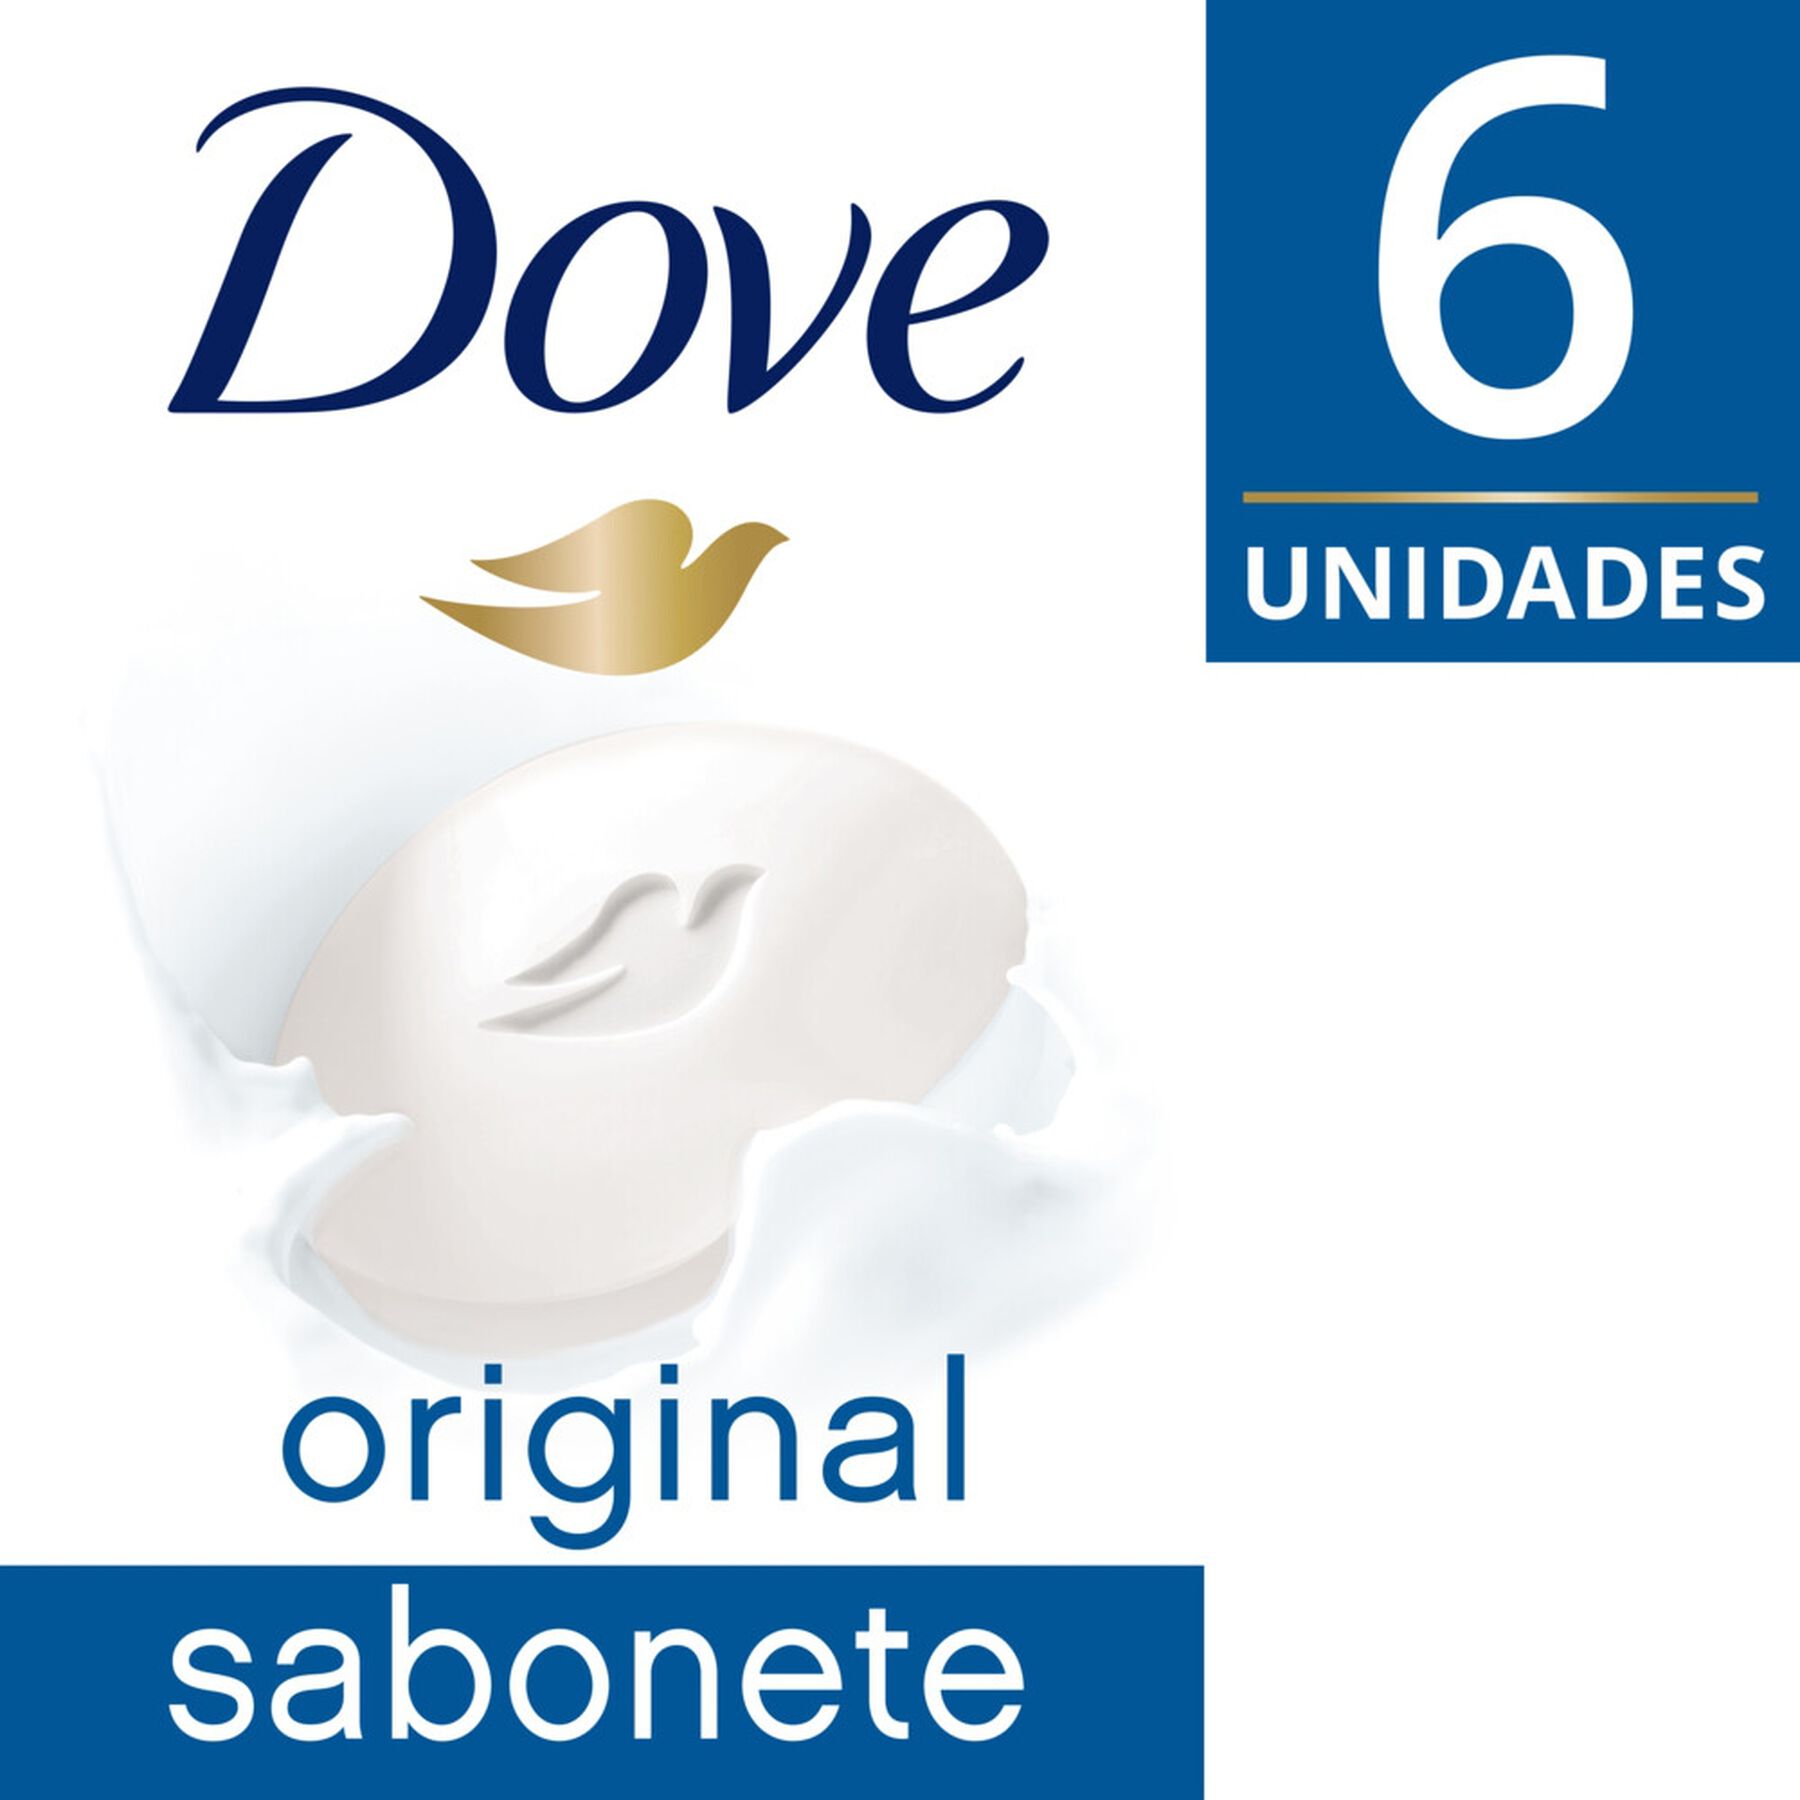 Pack Sabonete em Barra Original Dove Cartucho 6 Unidades 90g Cada Leve Mais Pague Menos